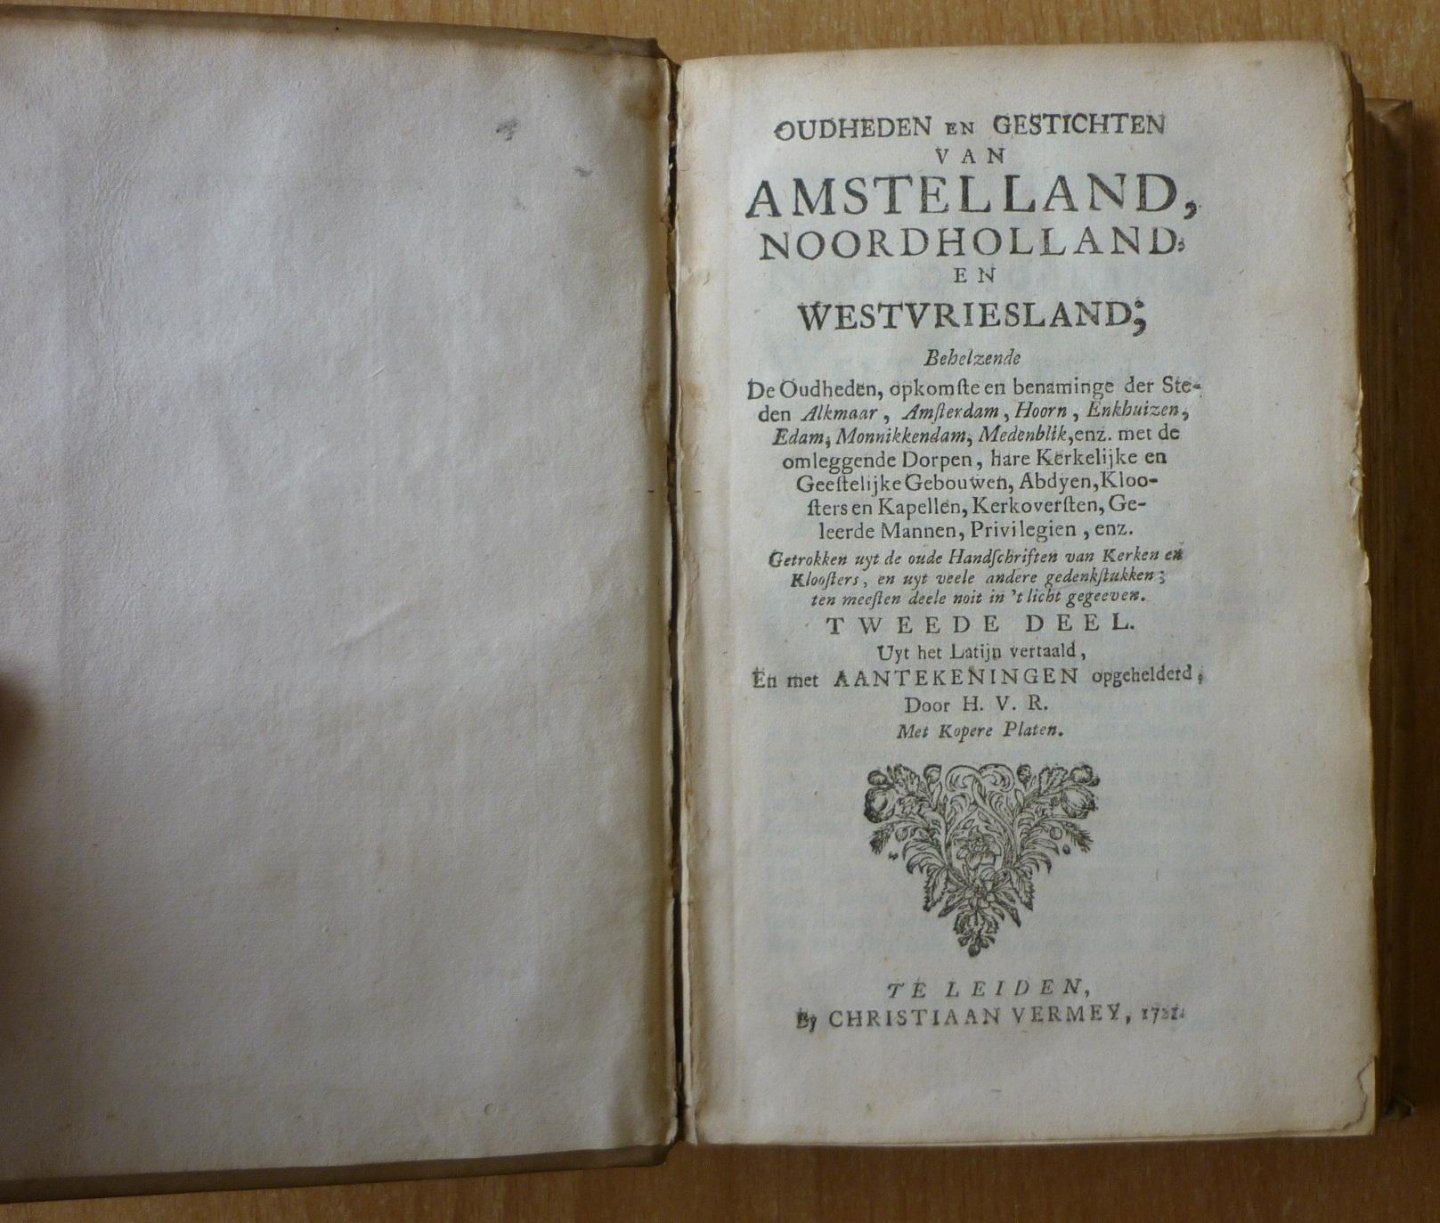 [Hugo Franciscus van Heussen], H.V.R. [= Hugo van Rijn] - Oudheden en Gestichten van Amstelland, Noordholland en Westvriesland (deel 2)